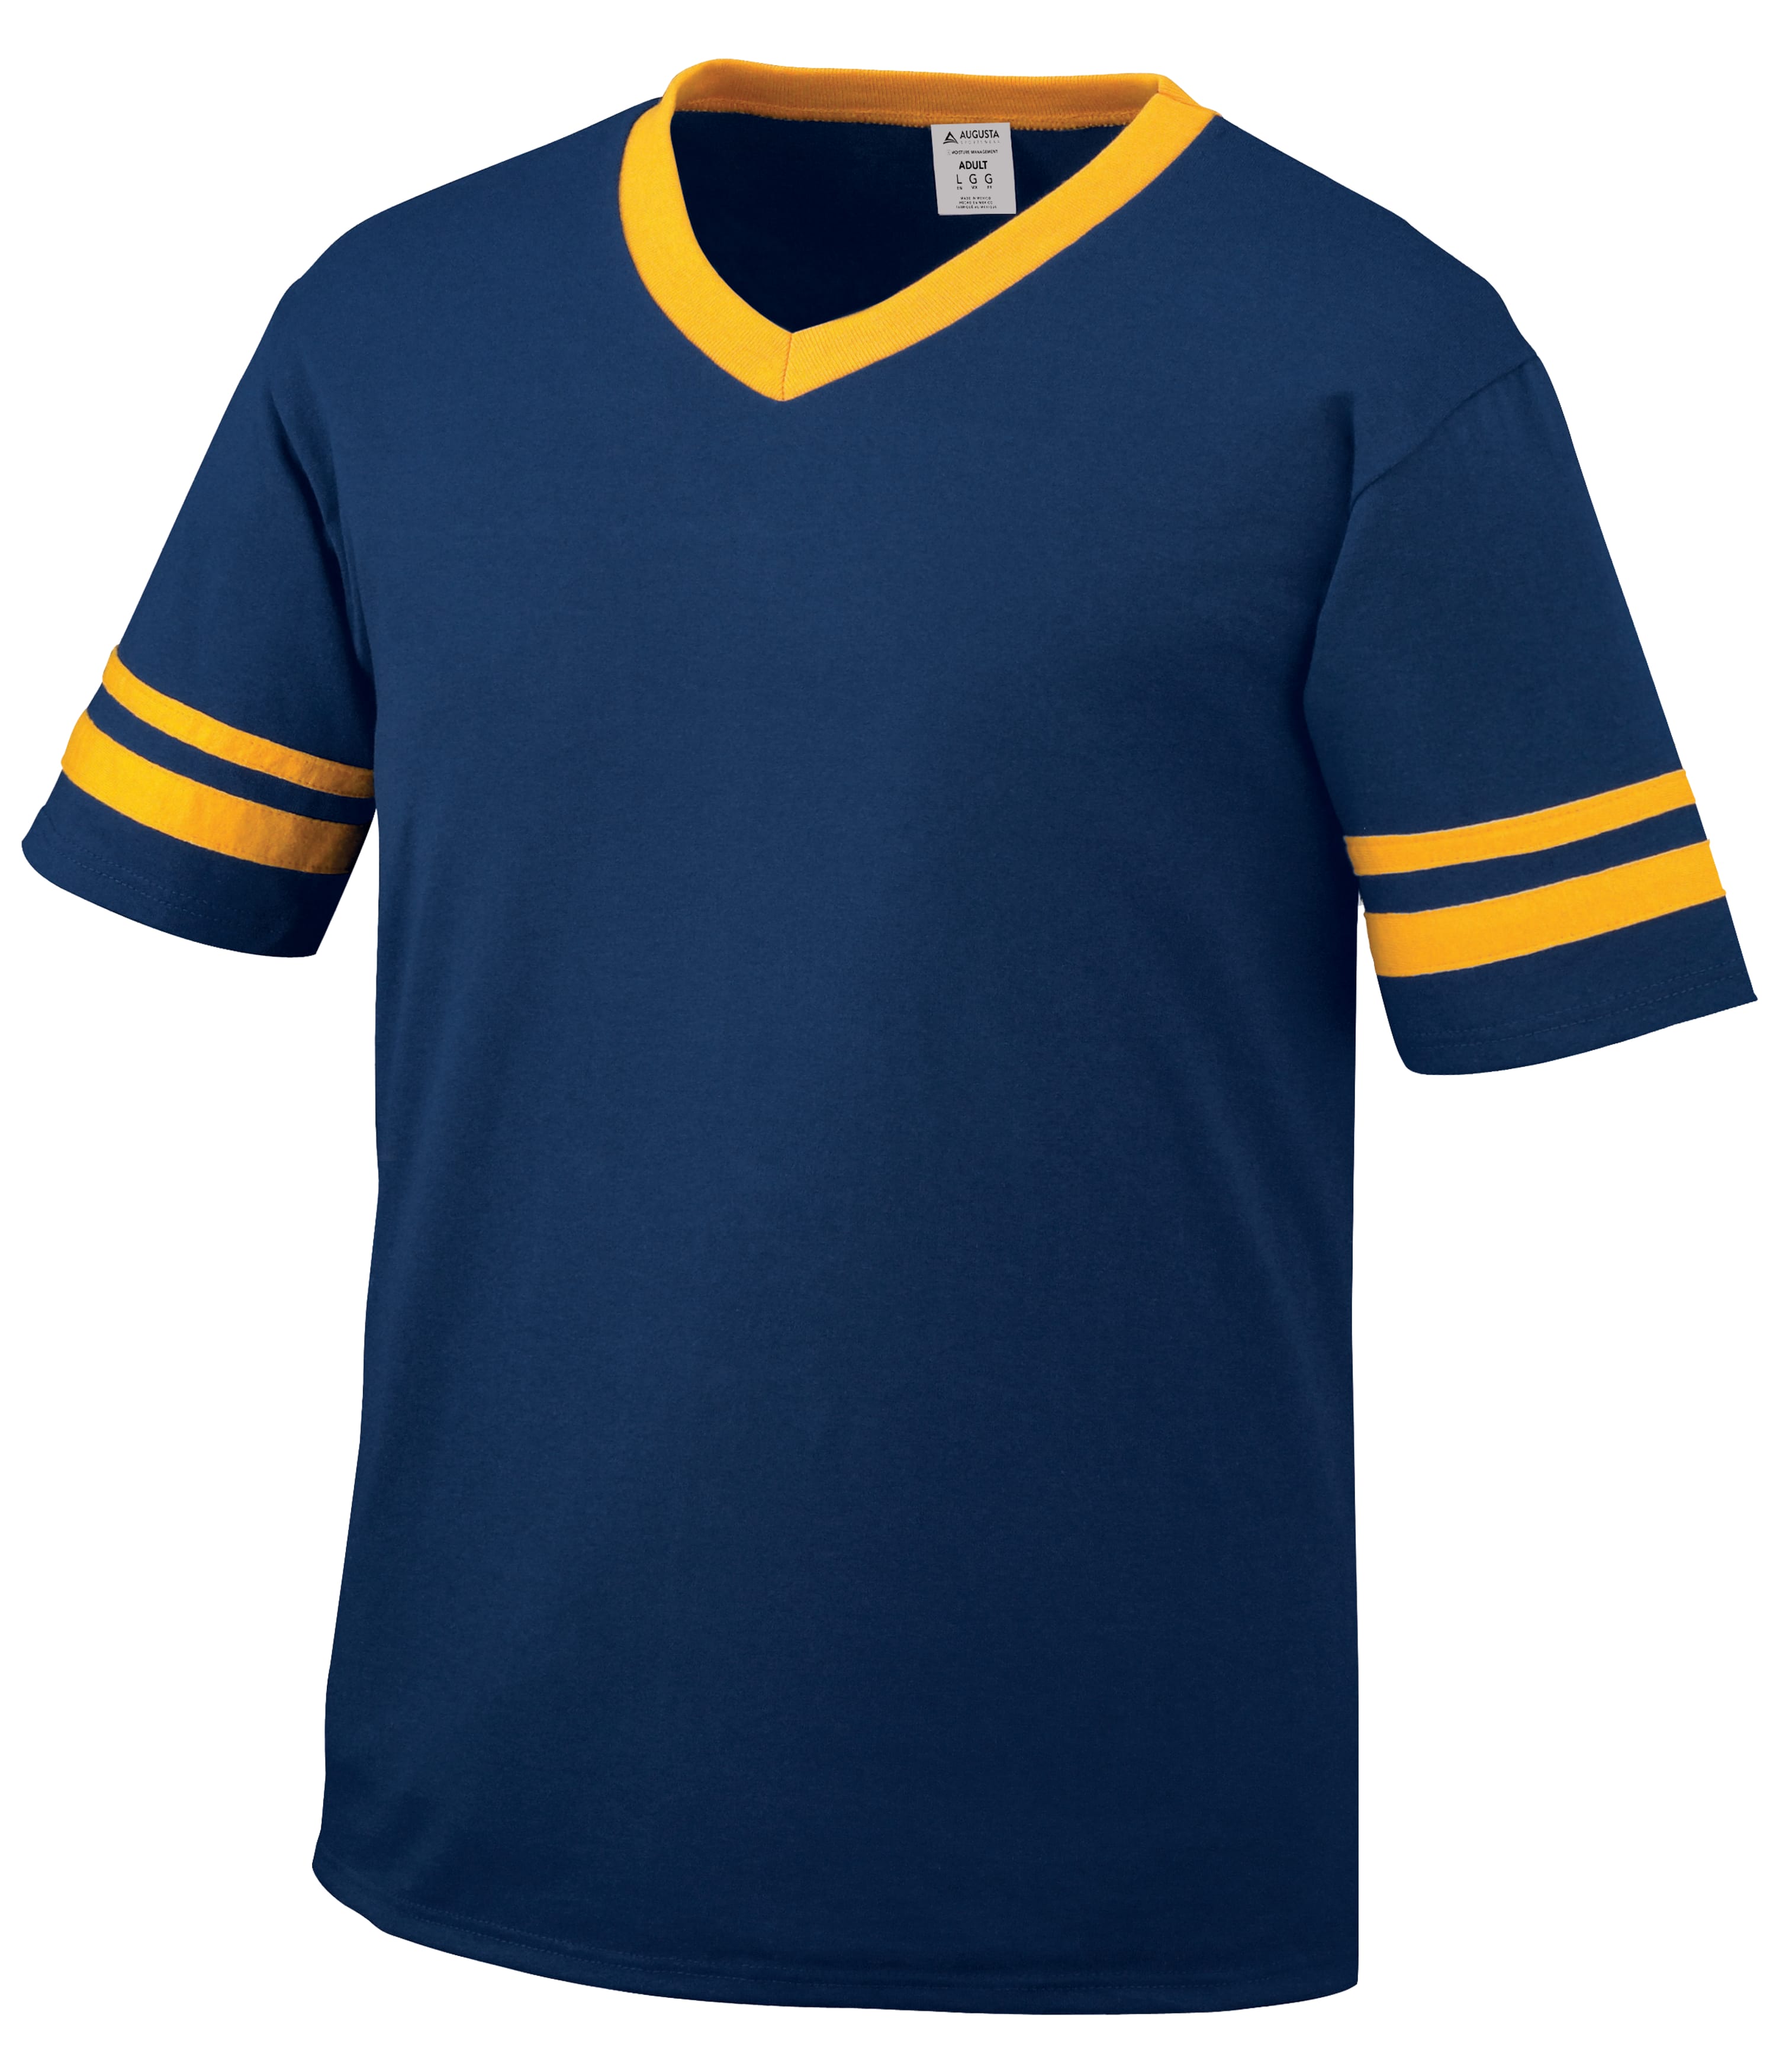 Augusta Sportswear 360 - Sleeve Stripe Jersey, Navy/Gold, L